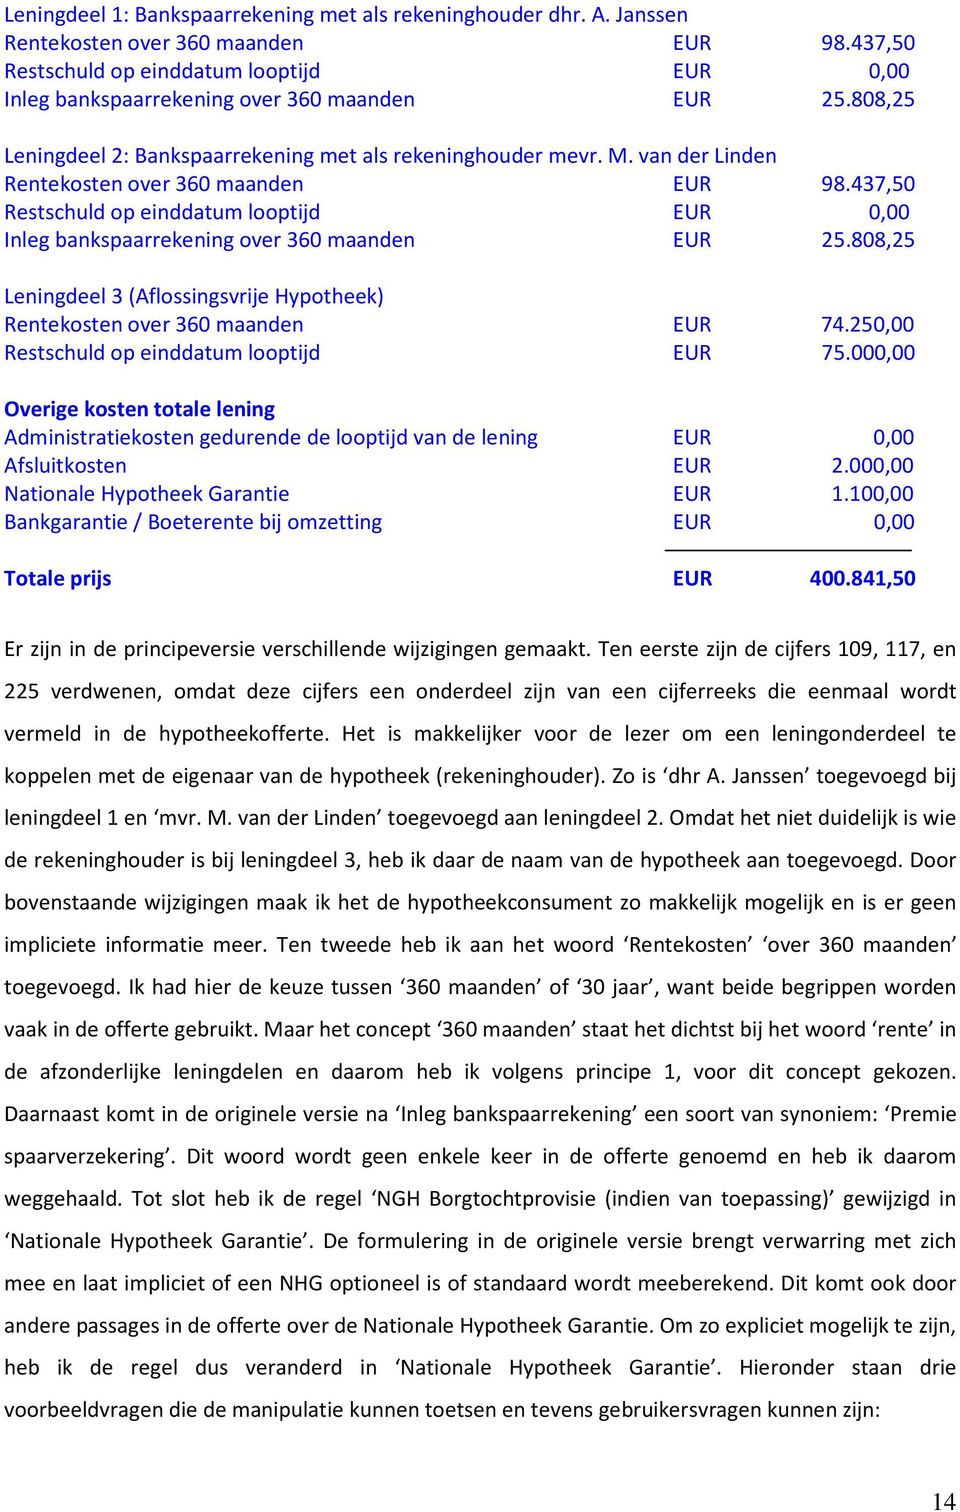 van der Linden Rentekosten over 360 maanden EUR 98.437,50 Restschuld op einddatum looptijd EUR 0,00 Inleg bankspaarrekening over 360 maanden EUR 25.